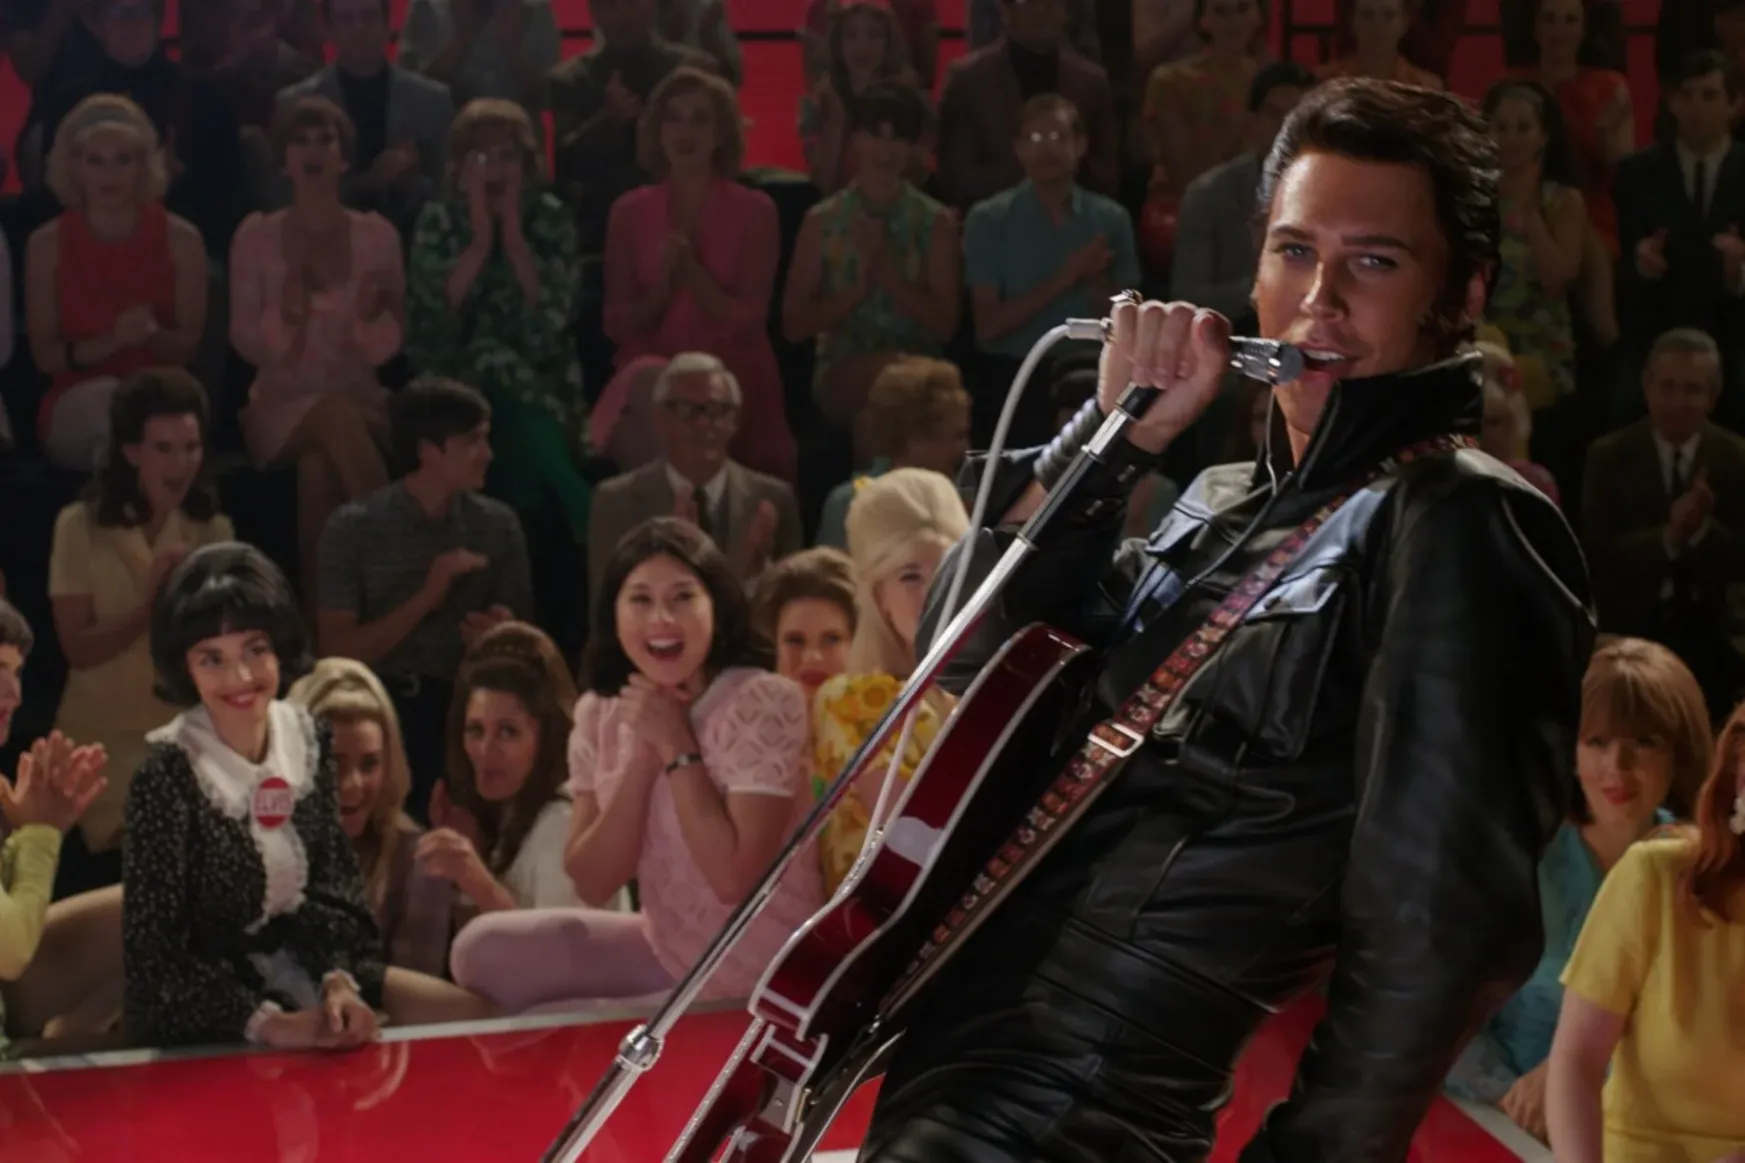 Az Elvis nem is egy film, hanem egy videóklipben előadott mese